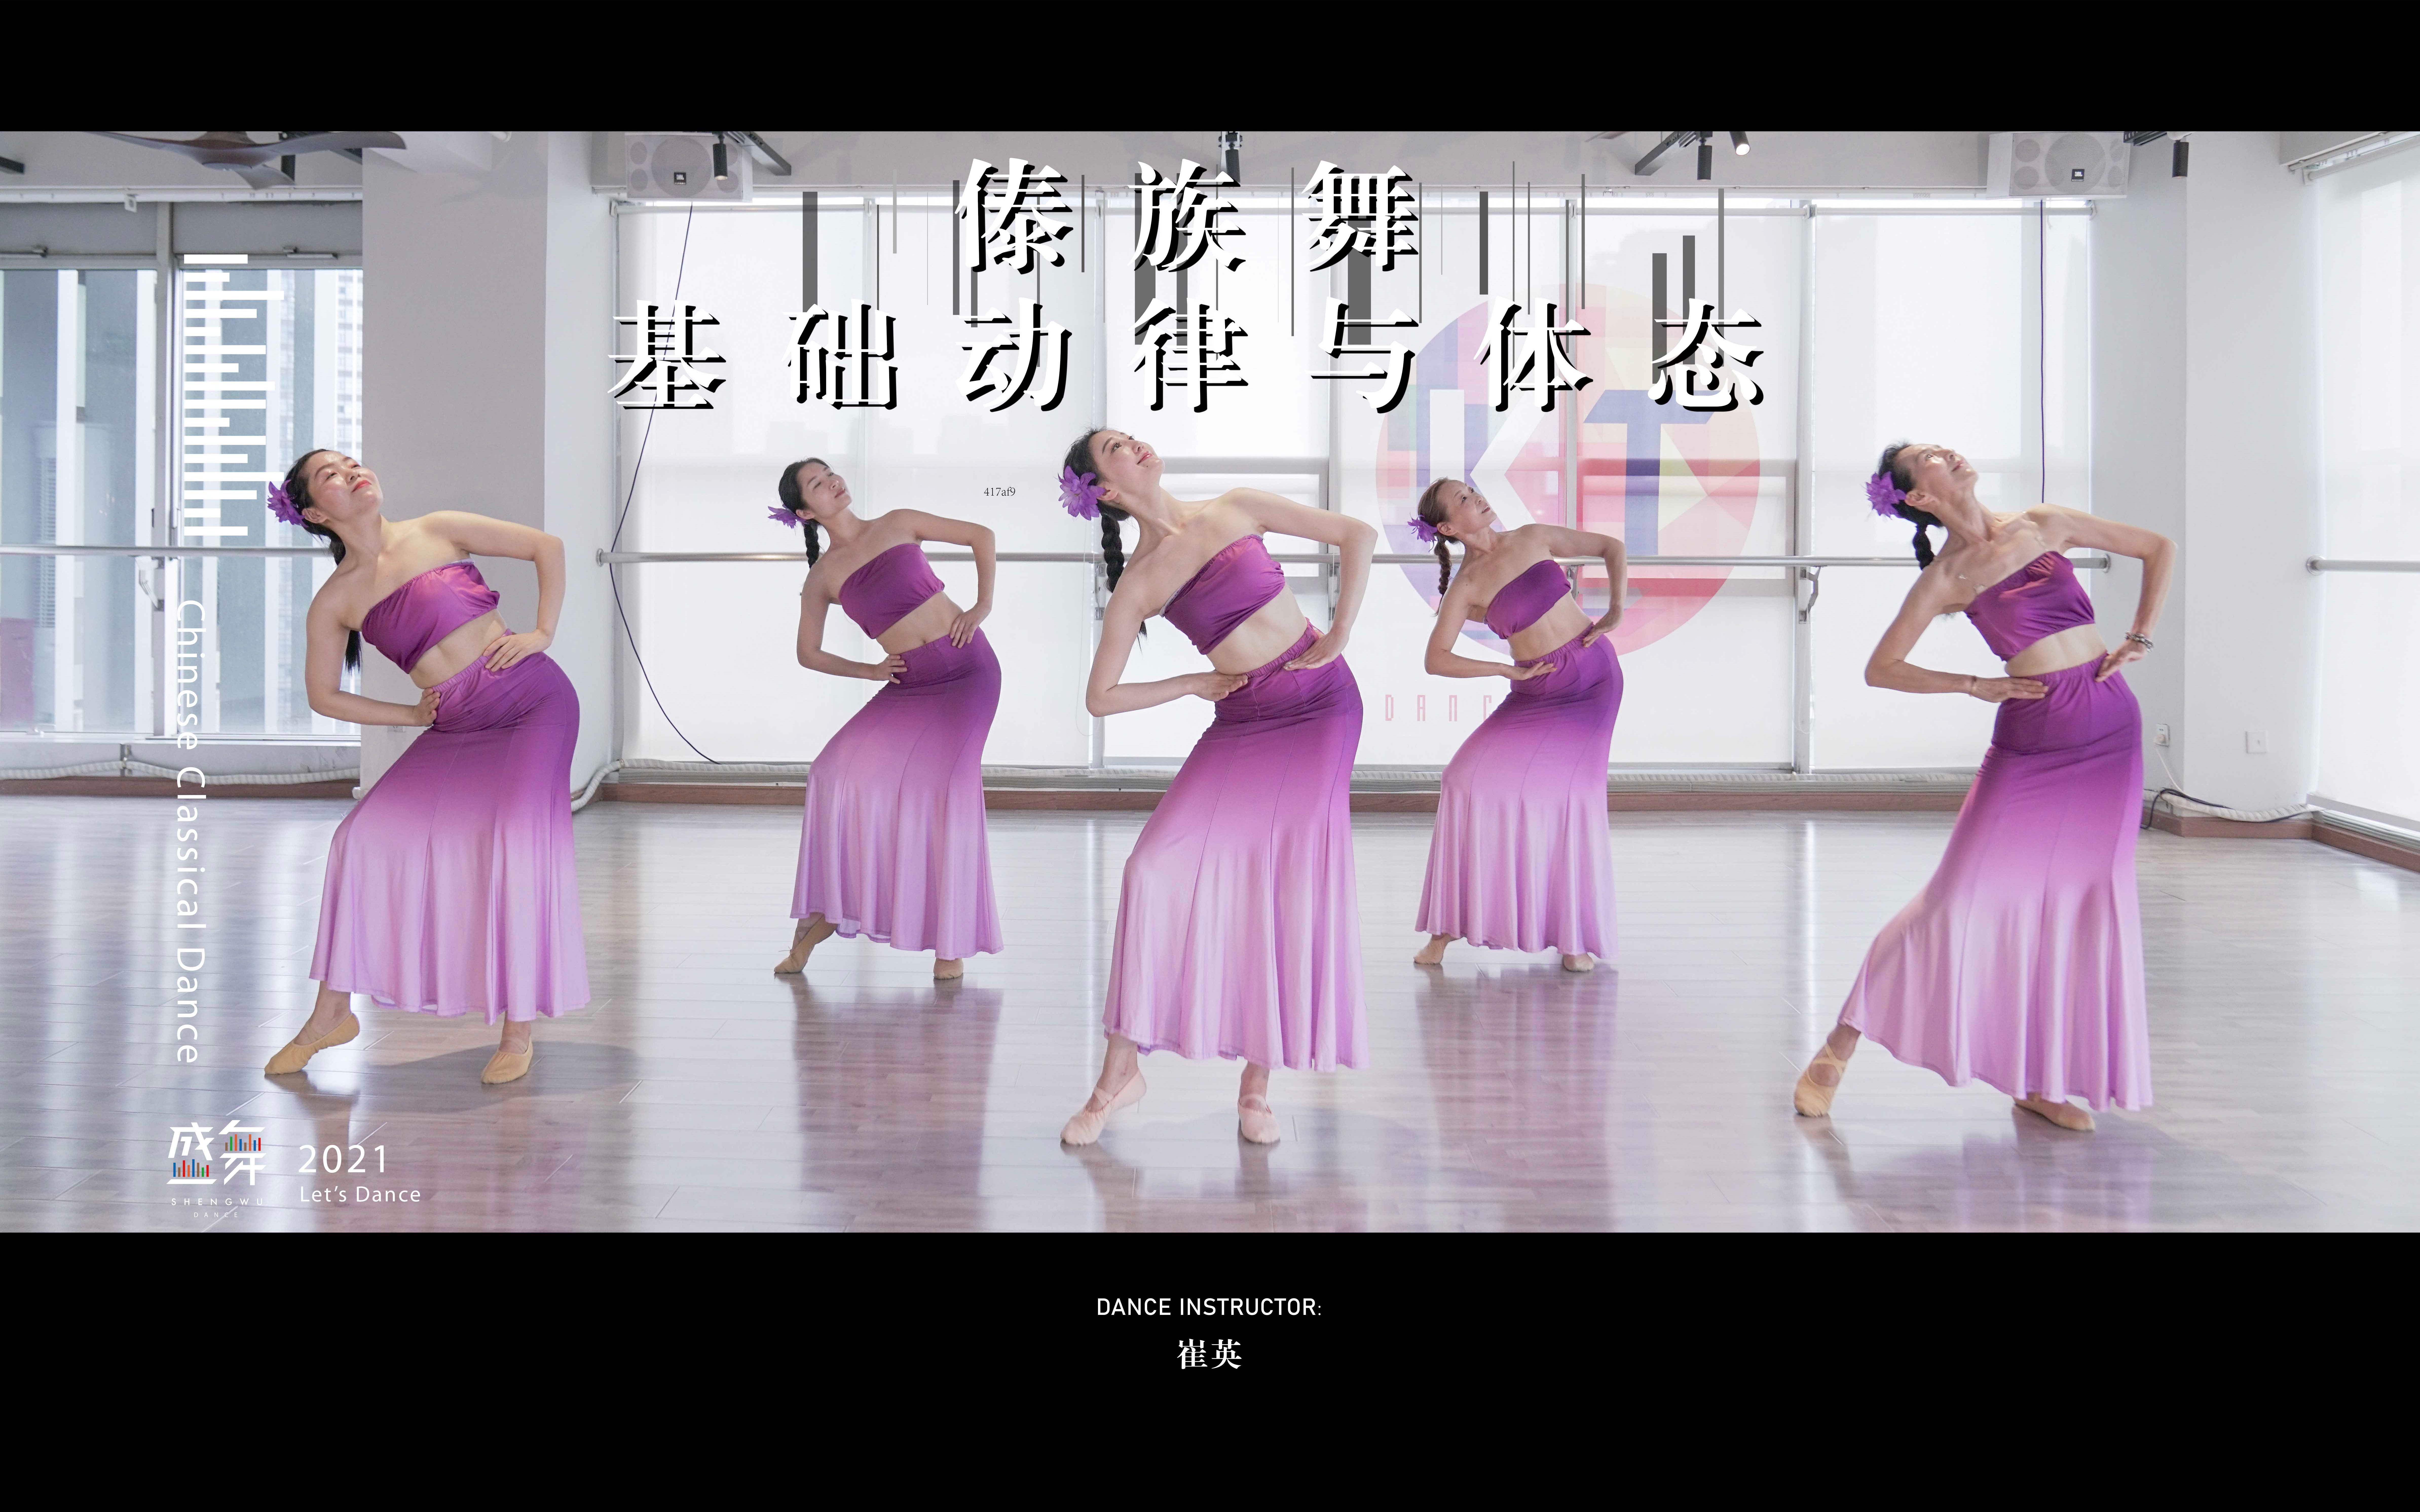 【盛舞】崔英导师 傣族舞基础 ——《基础动律与体态》